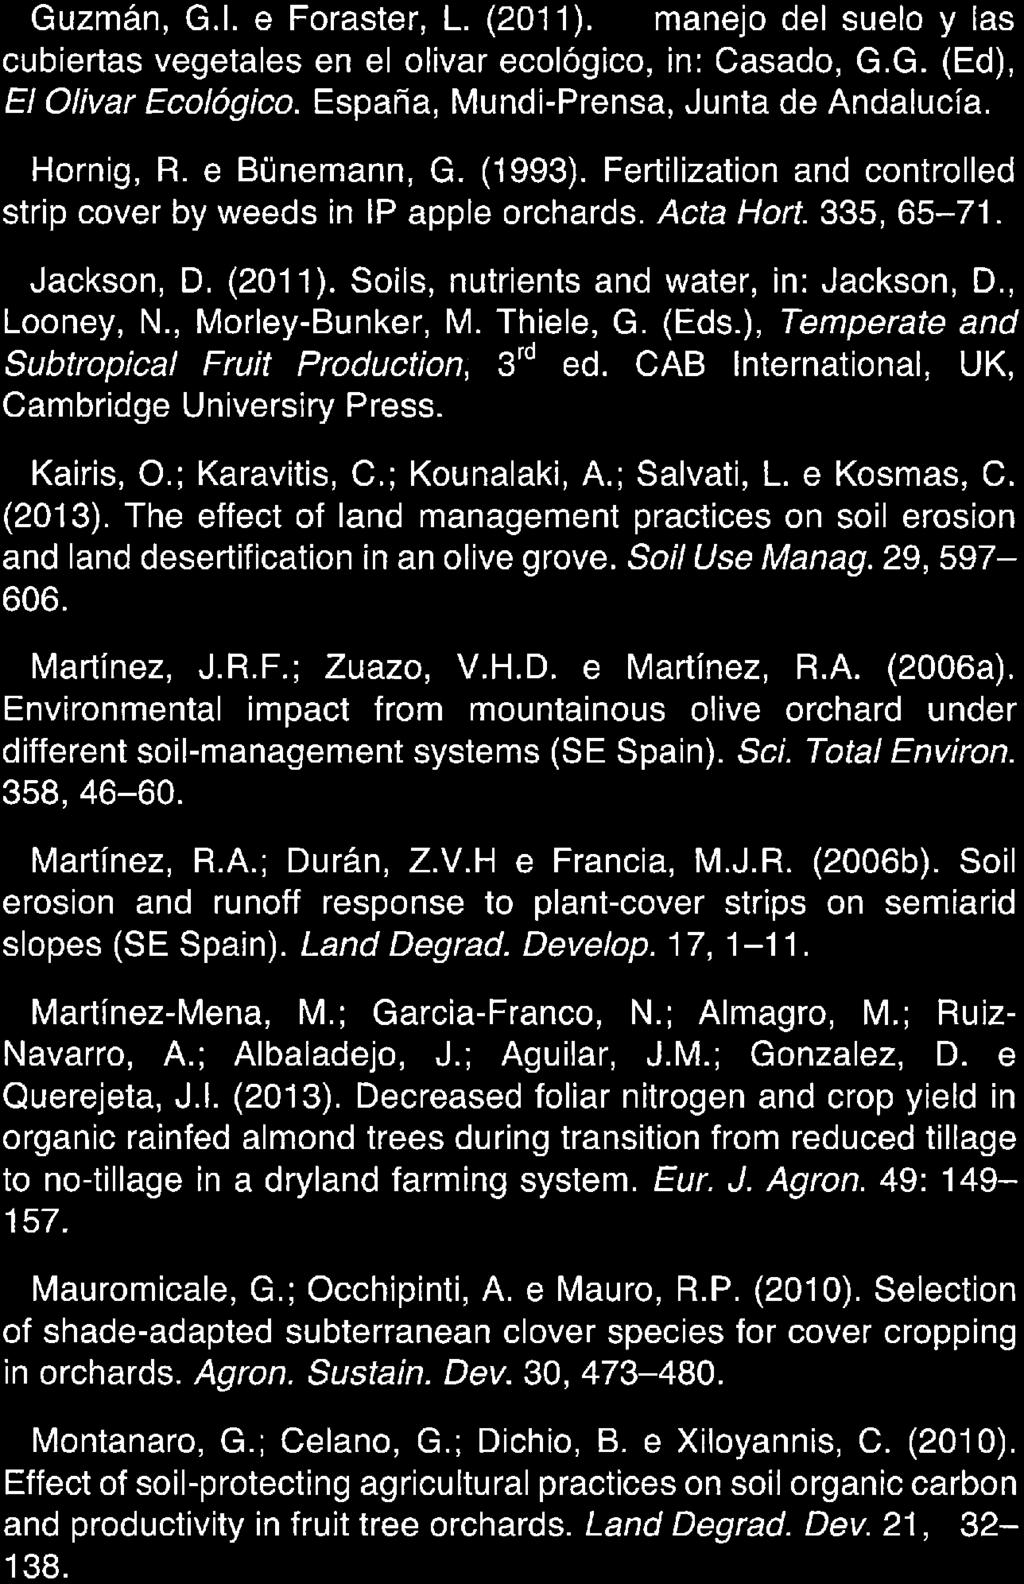 Guzmán, G. l. e Foraster, L. (2011). El manejo dei suelo y las cubiertas vegetales en el olivar ecológico, in: Casado, G. G. (Ed), El Olivar Ecológico. Espana, Mundi-Prensa, Junta de Andalucía.